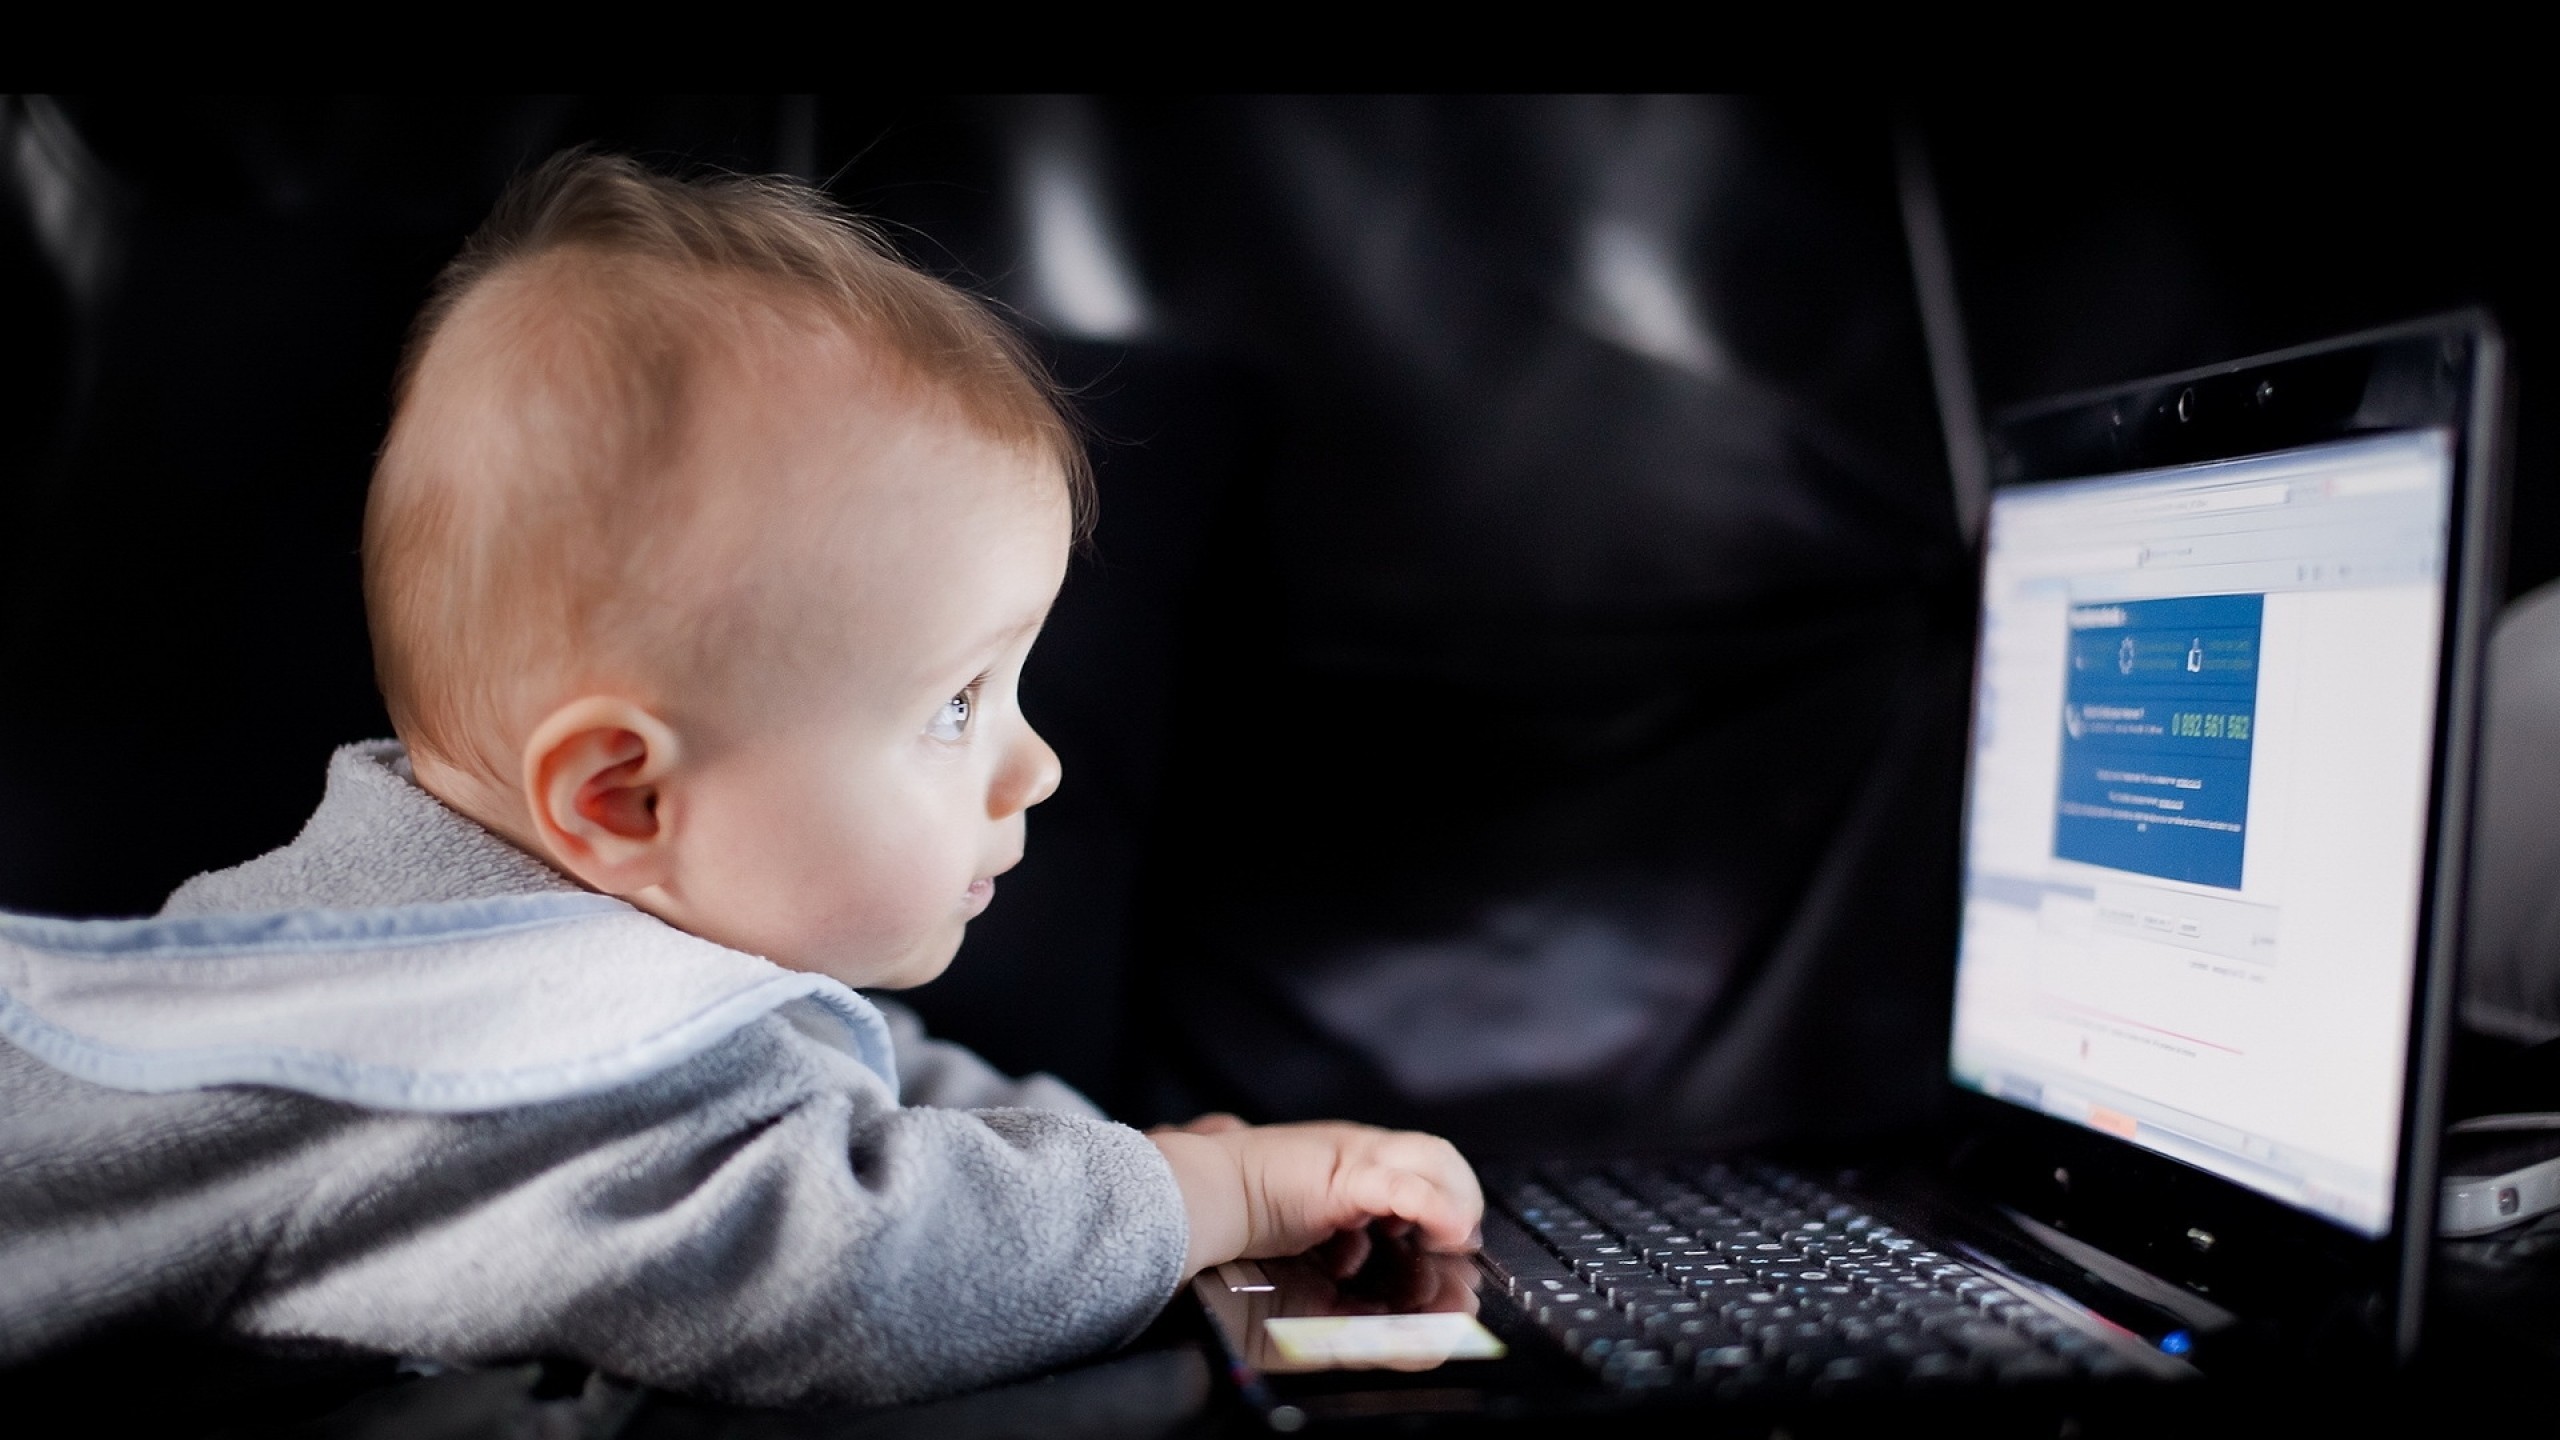 Rebyonok. Маленький компьютер для детей. Ребенок за компьютером. Малыш за компьютером. Маленькие дети в интернете.